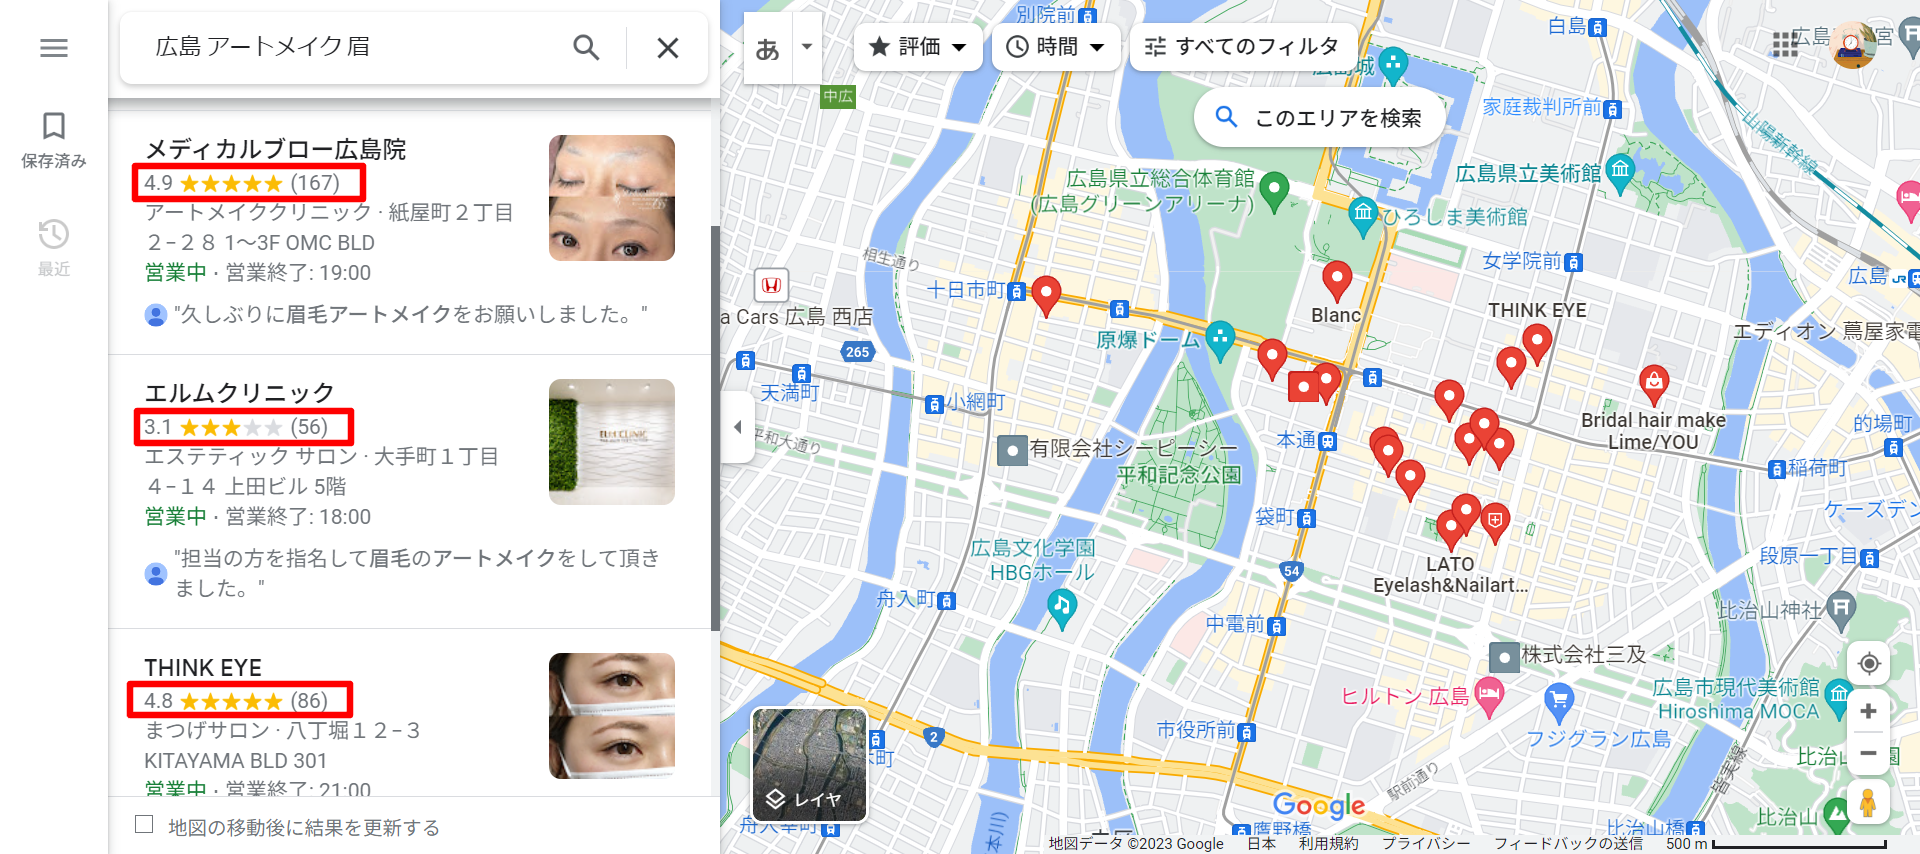 広島-アートメイク-眉-Google-マップ